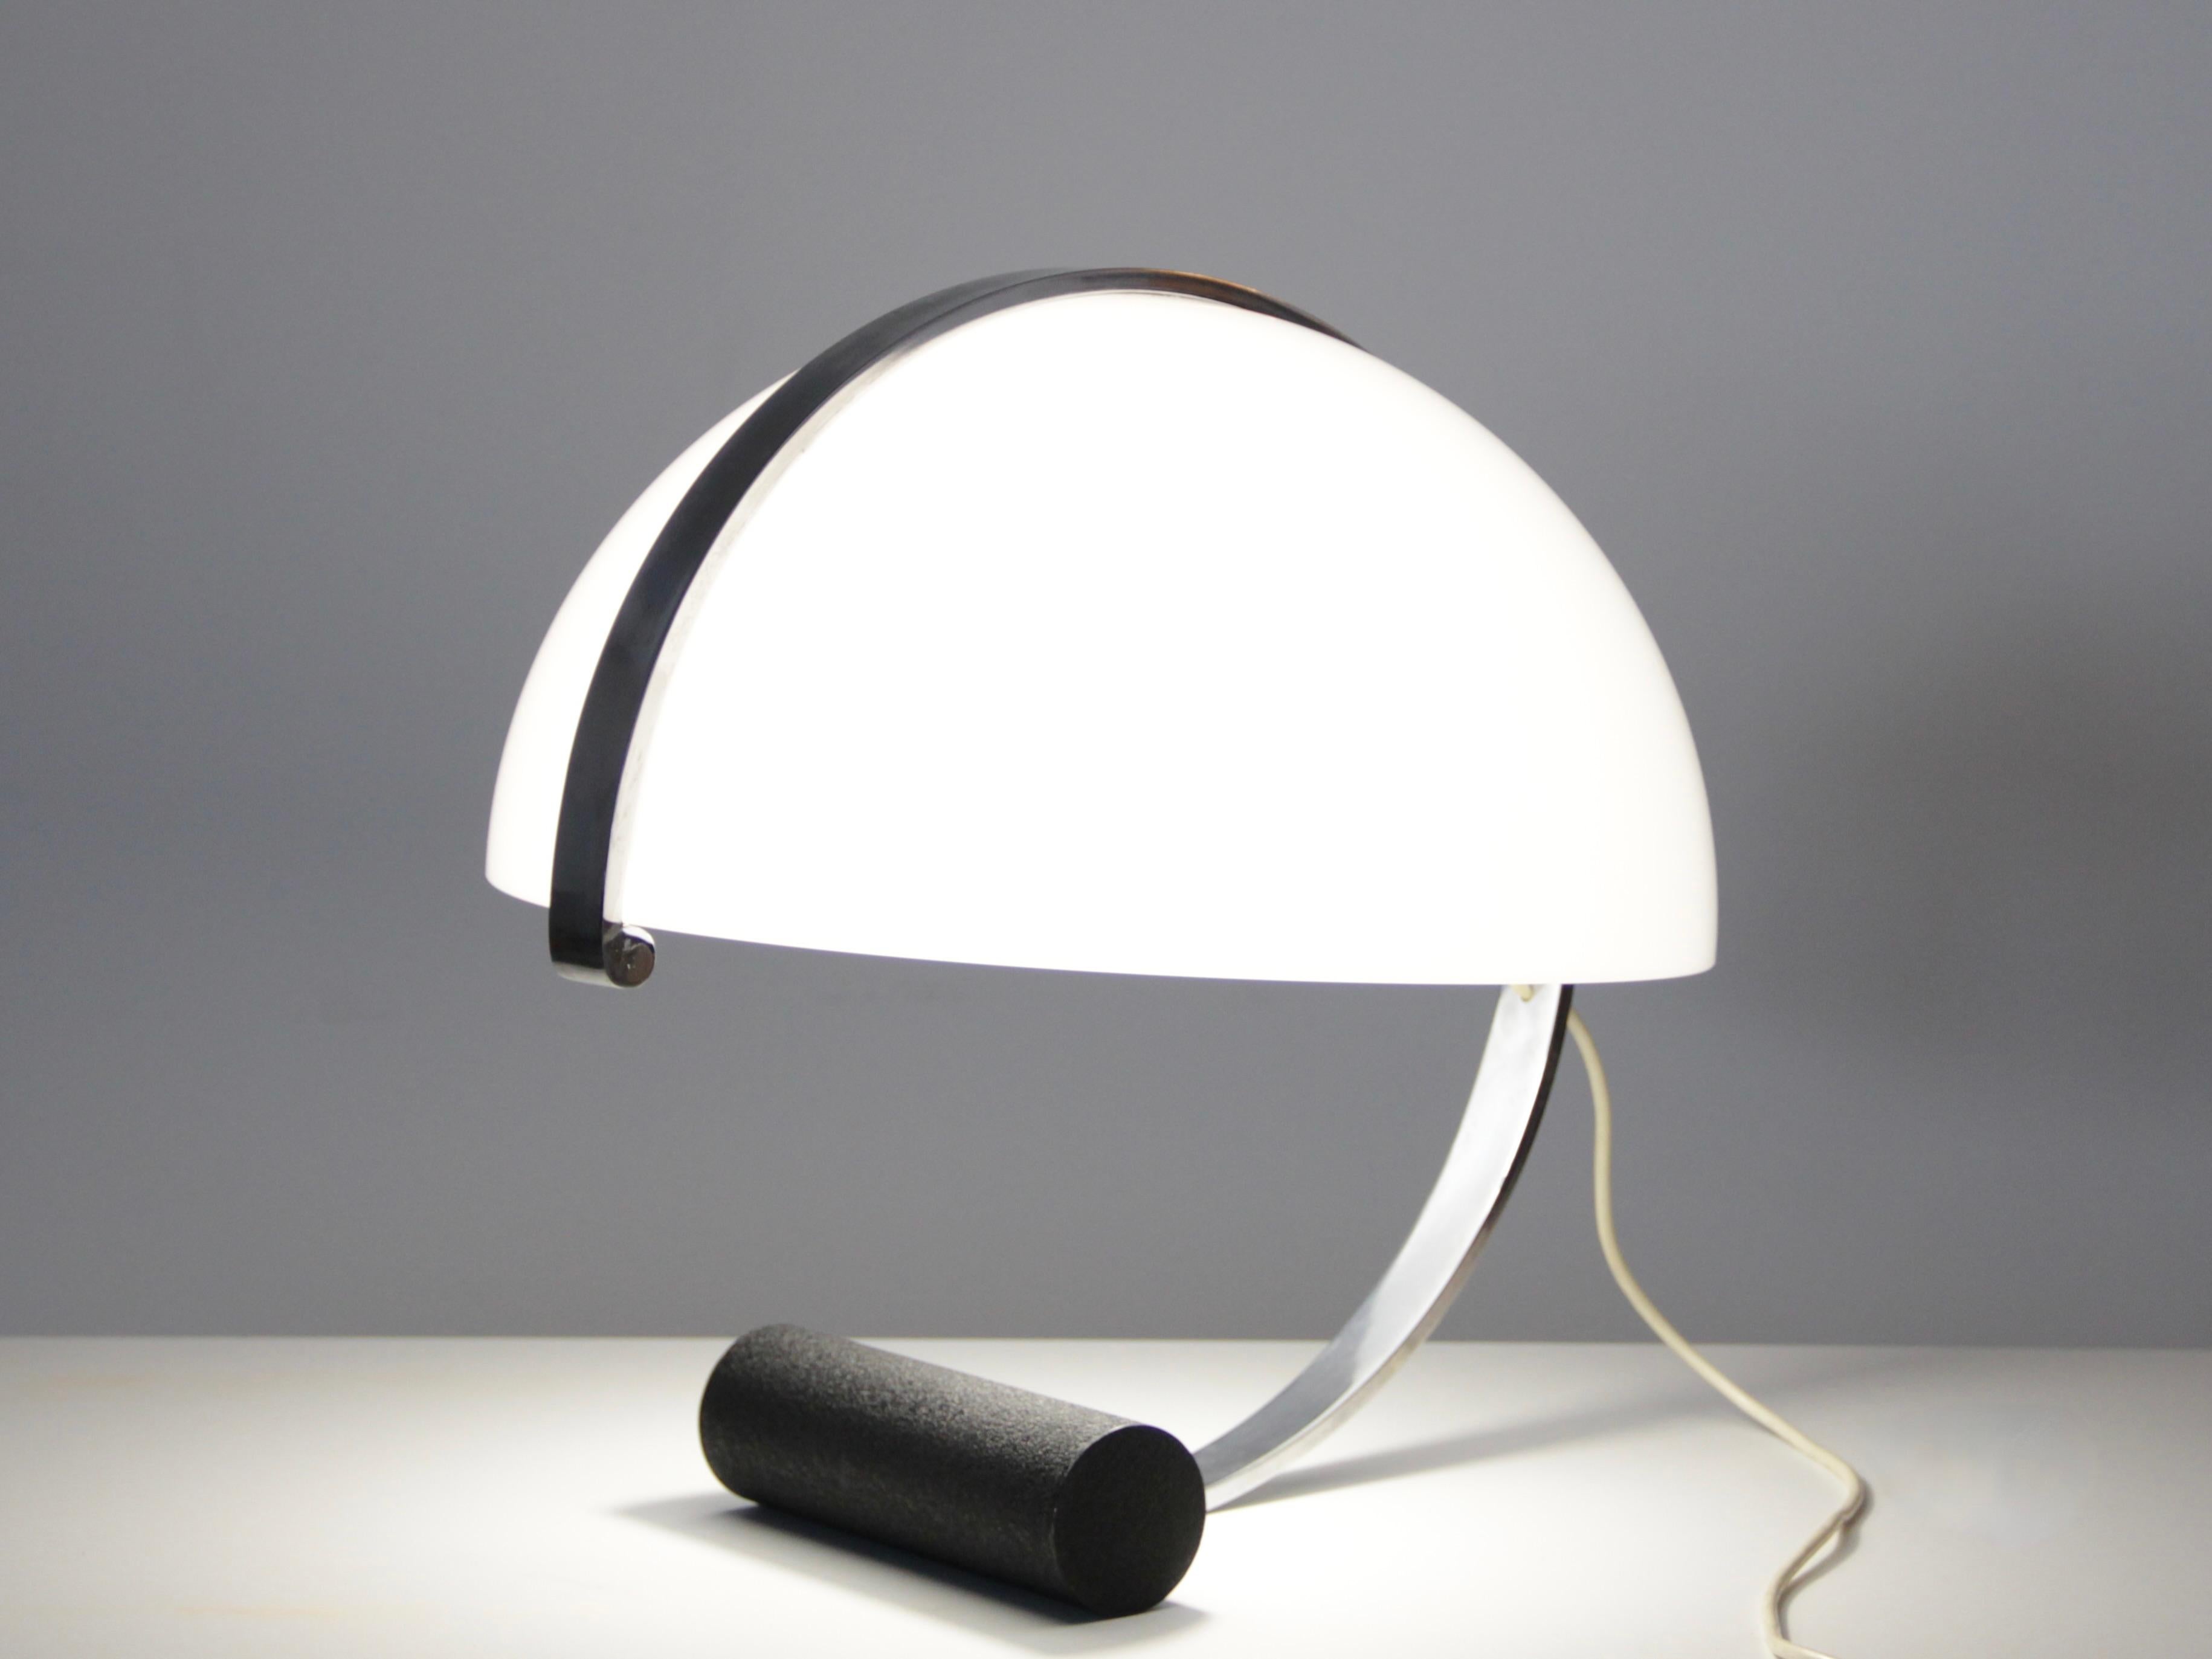 Italian design globe shaped plexiglass table lamp by Stilnovo for Artimeta, 1960.